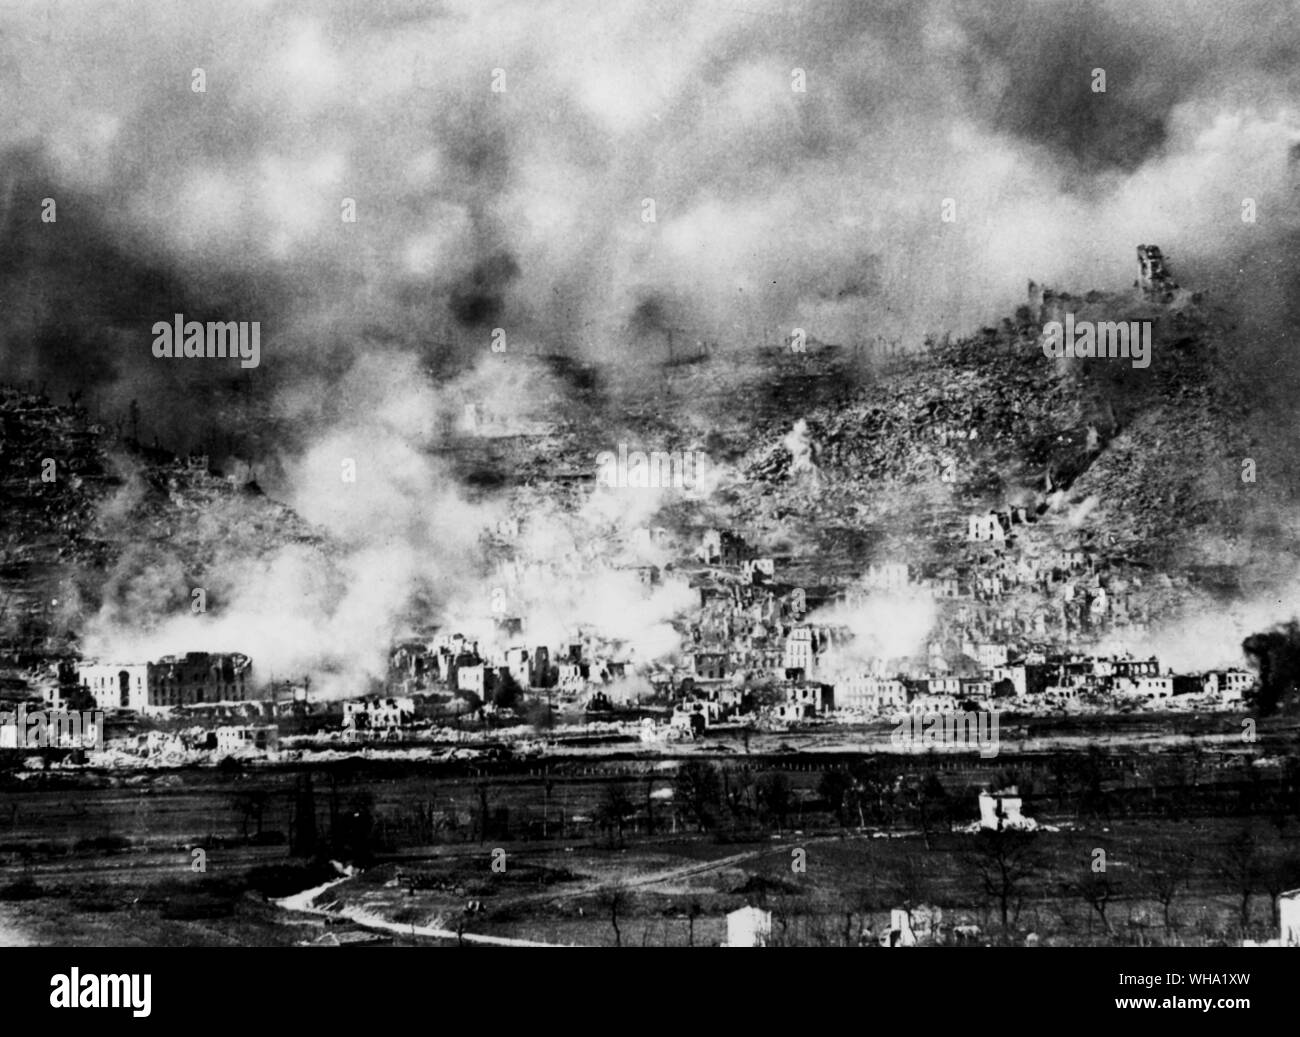 WW2 : le 15 mars 1944, après 2 500 bombes avaient régné sur Cassino la lutte pour les ruines a commencé. Castle Hill (en haut à droite) a été capturé par les troupes néo-zélandaises. Banque D'Images